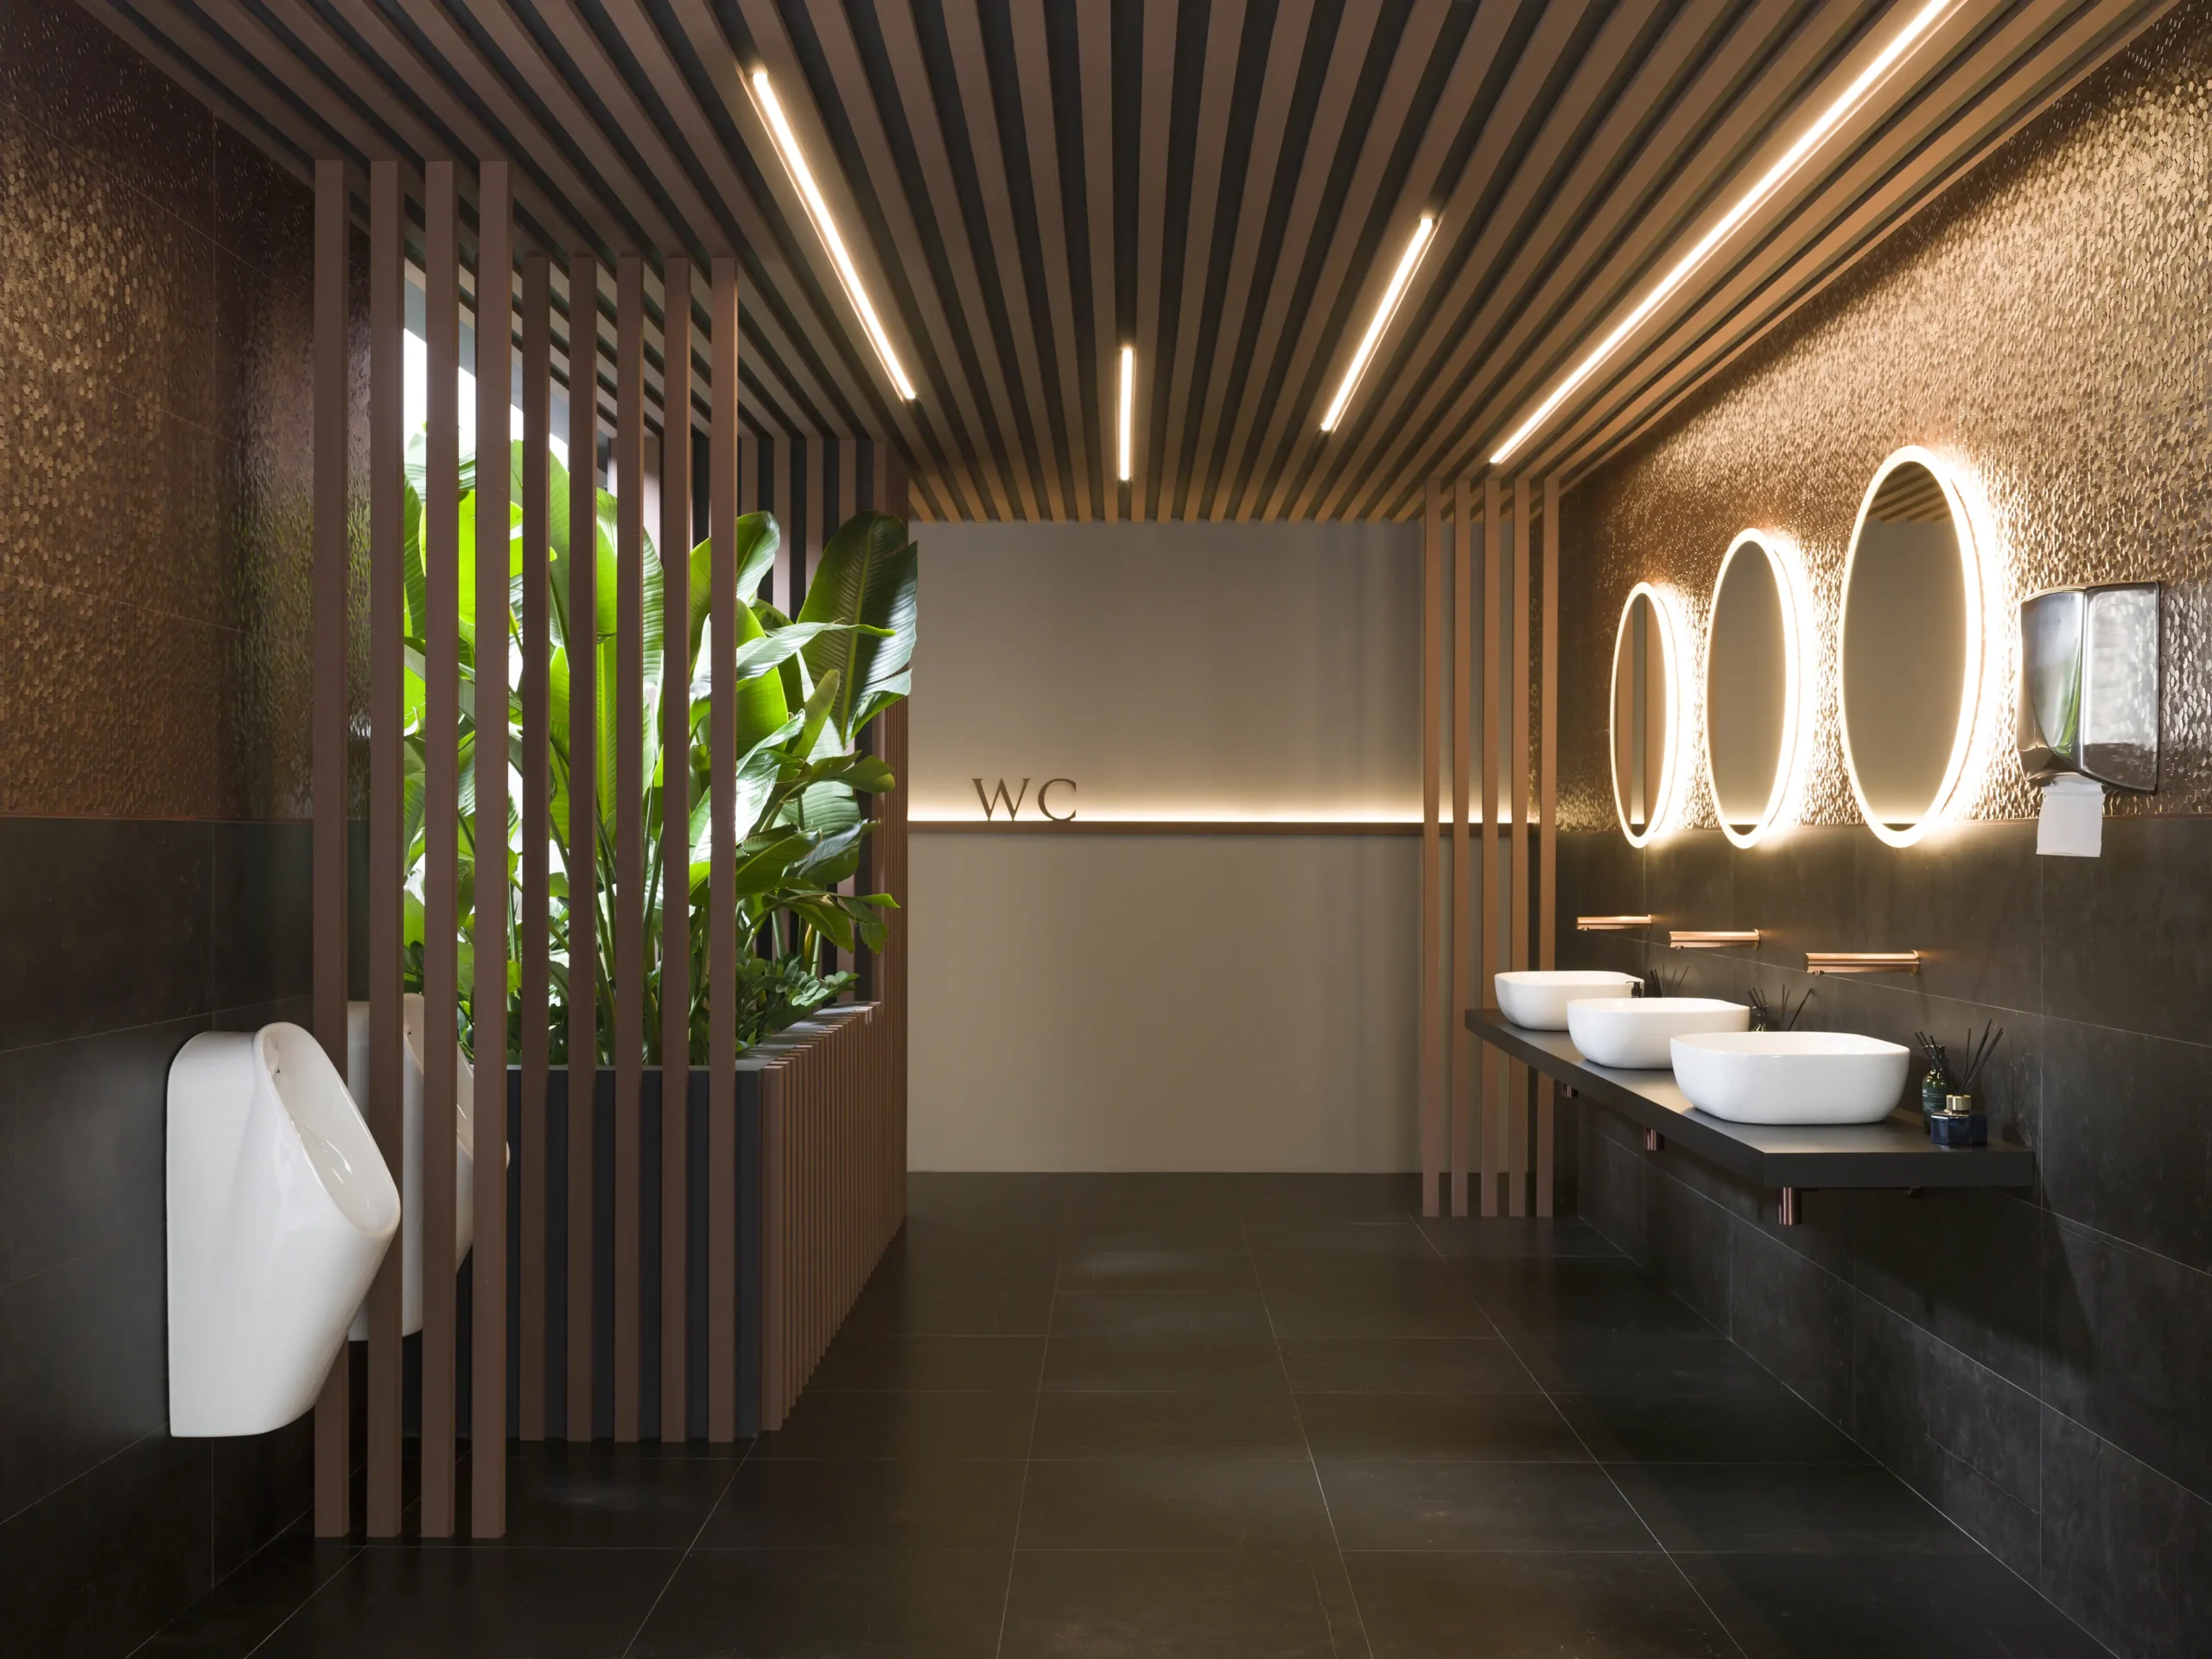 baños publicos inteligentes new zeland - Los restaurantes tienen que proporcionar baños en Nueva Zelanda